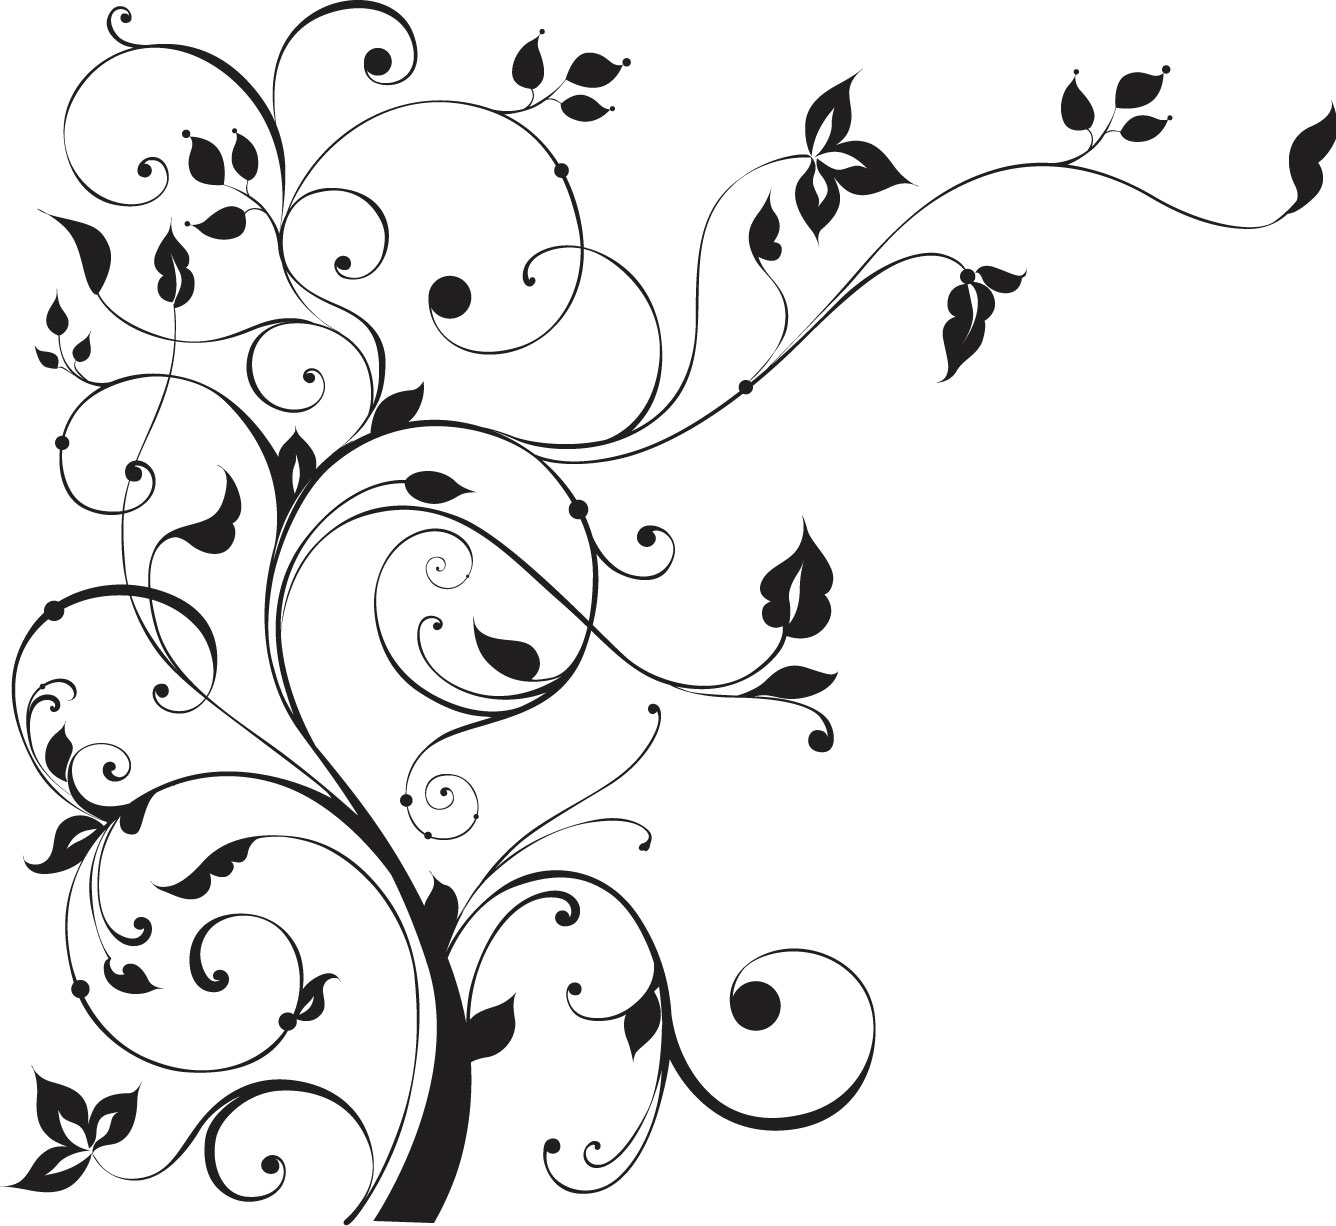 葉っぱや草木のイラスト 画像 フリー素材 白黒no 452 木 枝葉 蔓 白黒